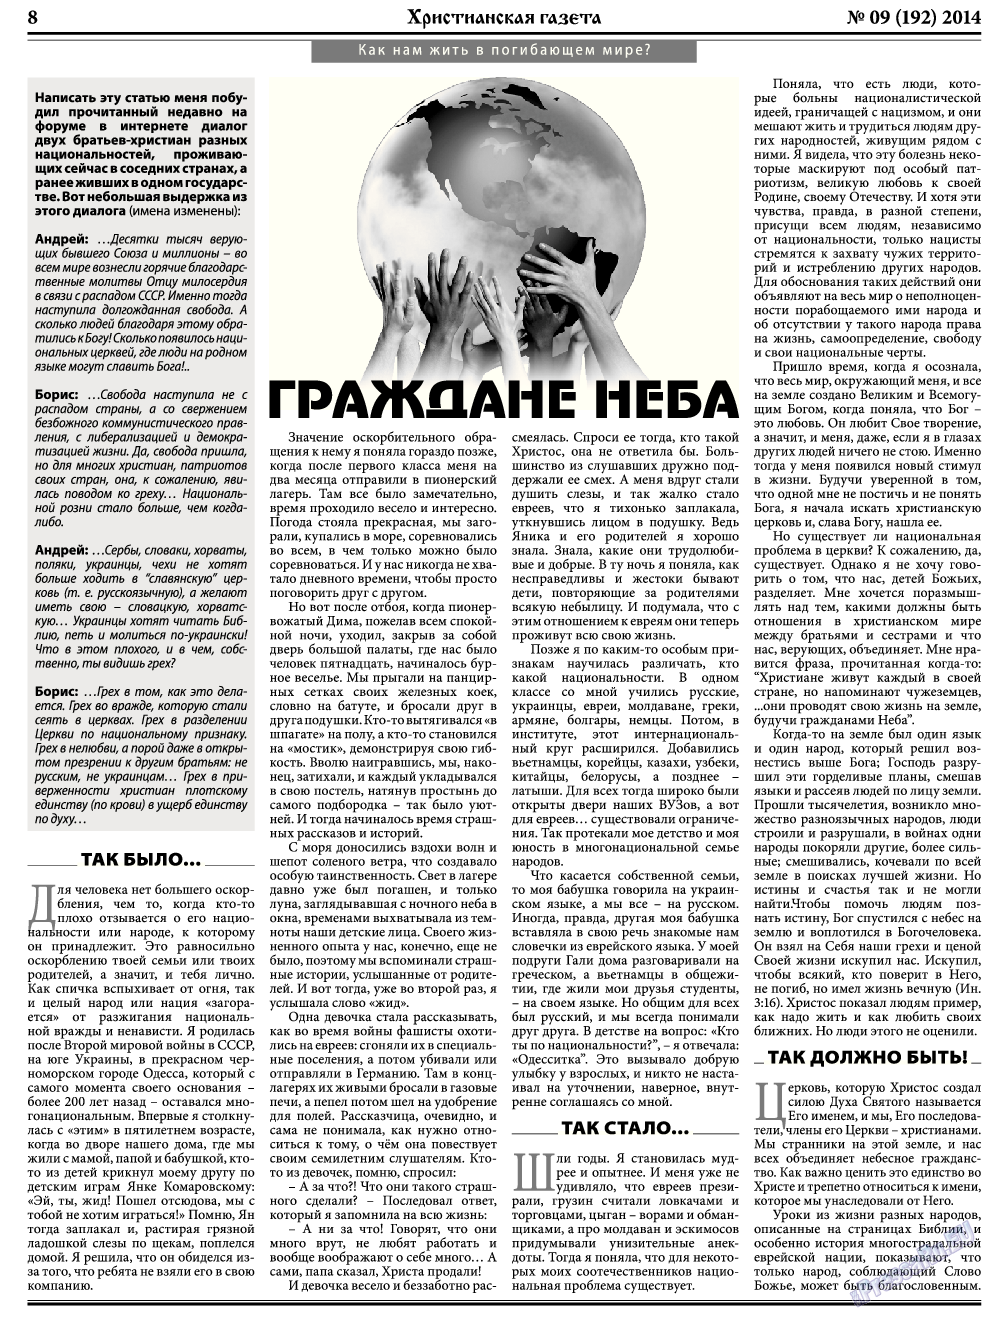 Христианская газета, газета. 2014 №9 стр.8